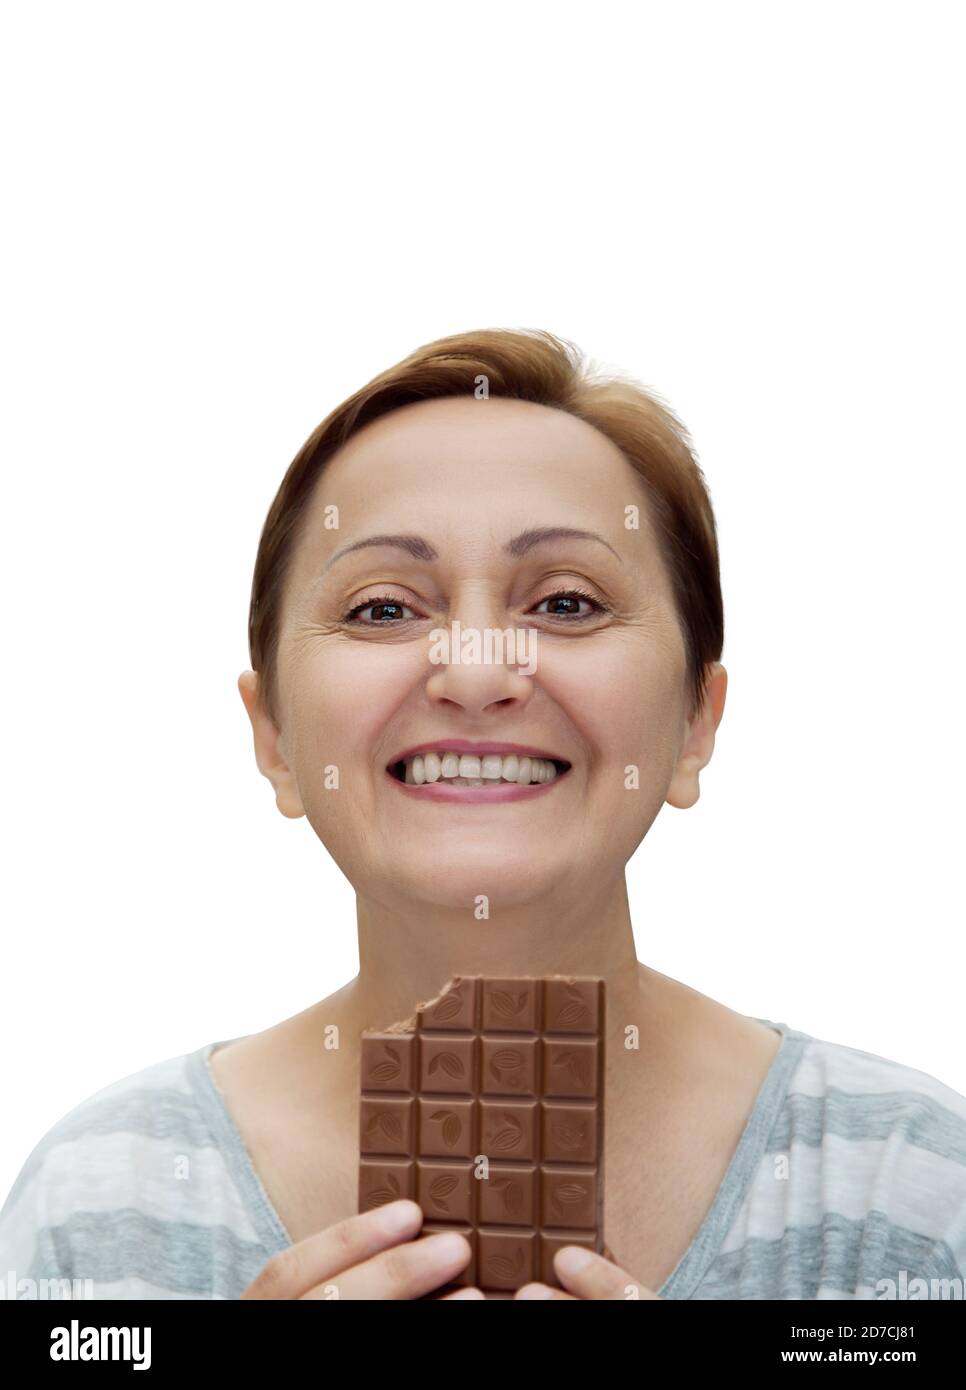 Frau essen Schokolade isoliert auf weißem Hintergrund. Schönes Porträt einer glücklichen Frau im mittleren Alter von 40s 50s lächeln und halten eine Schokolade Bar Stockfoto